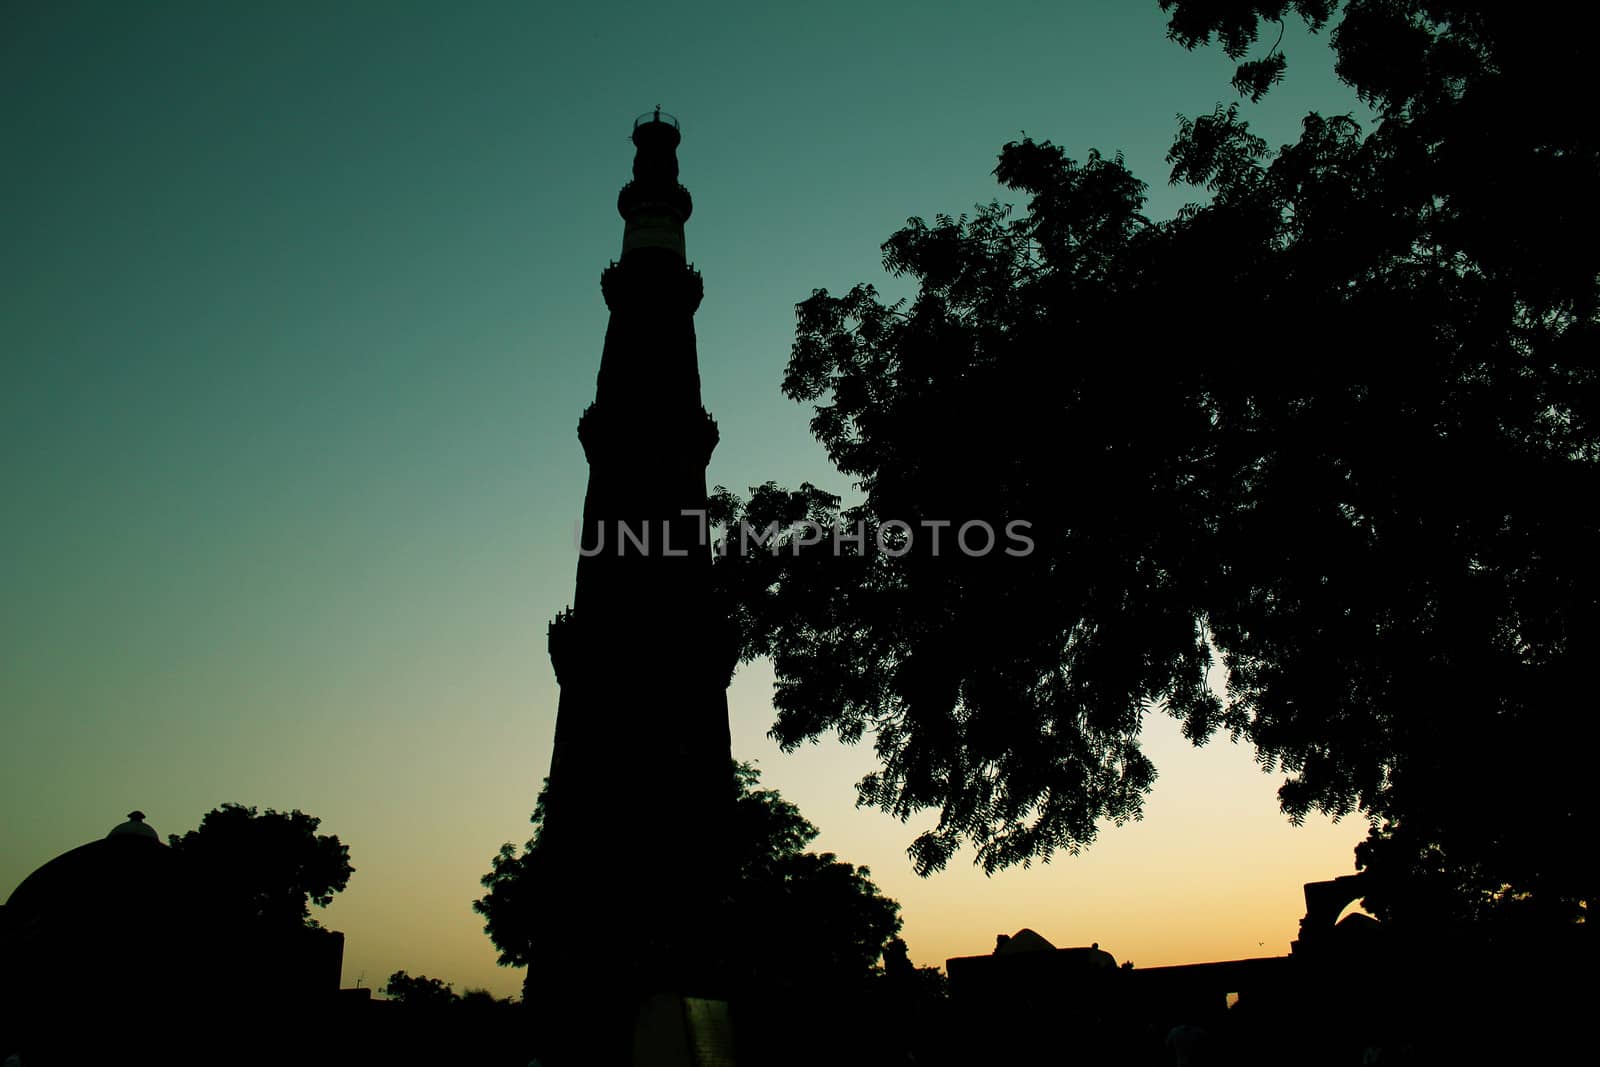 qutub minar silhouette by motionkarma